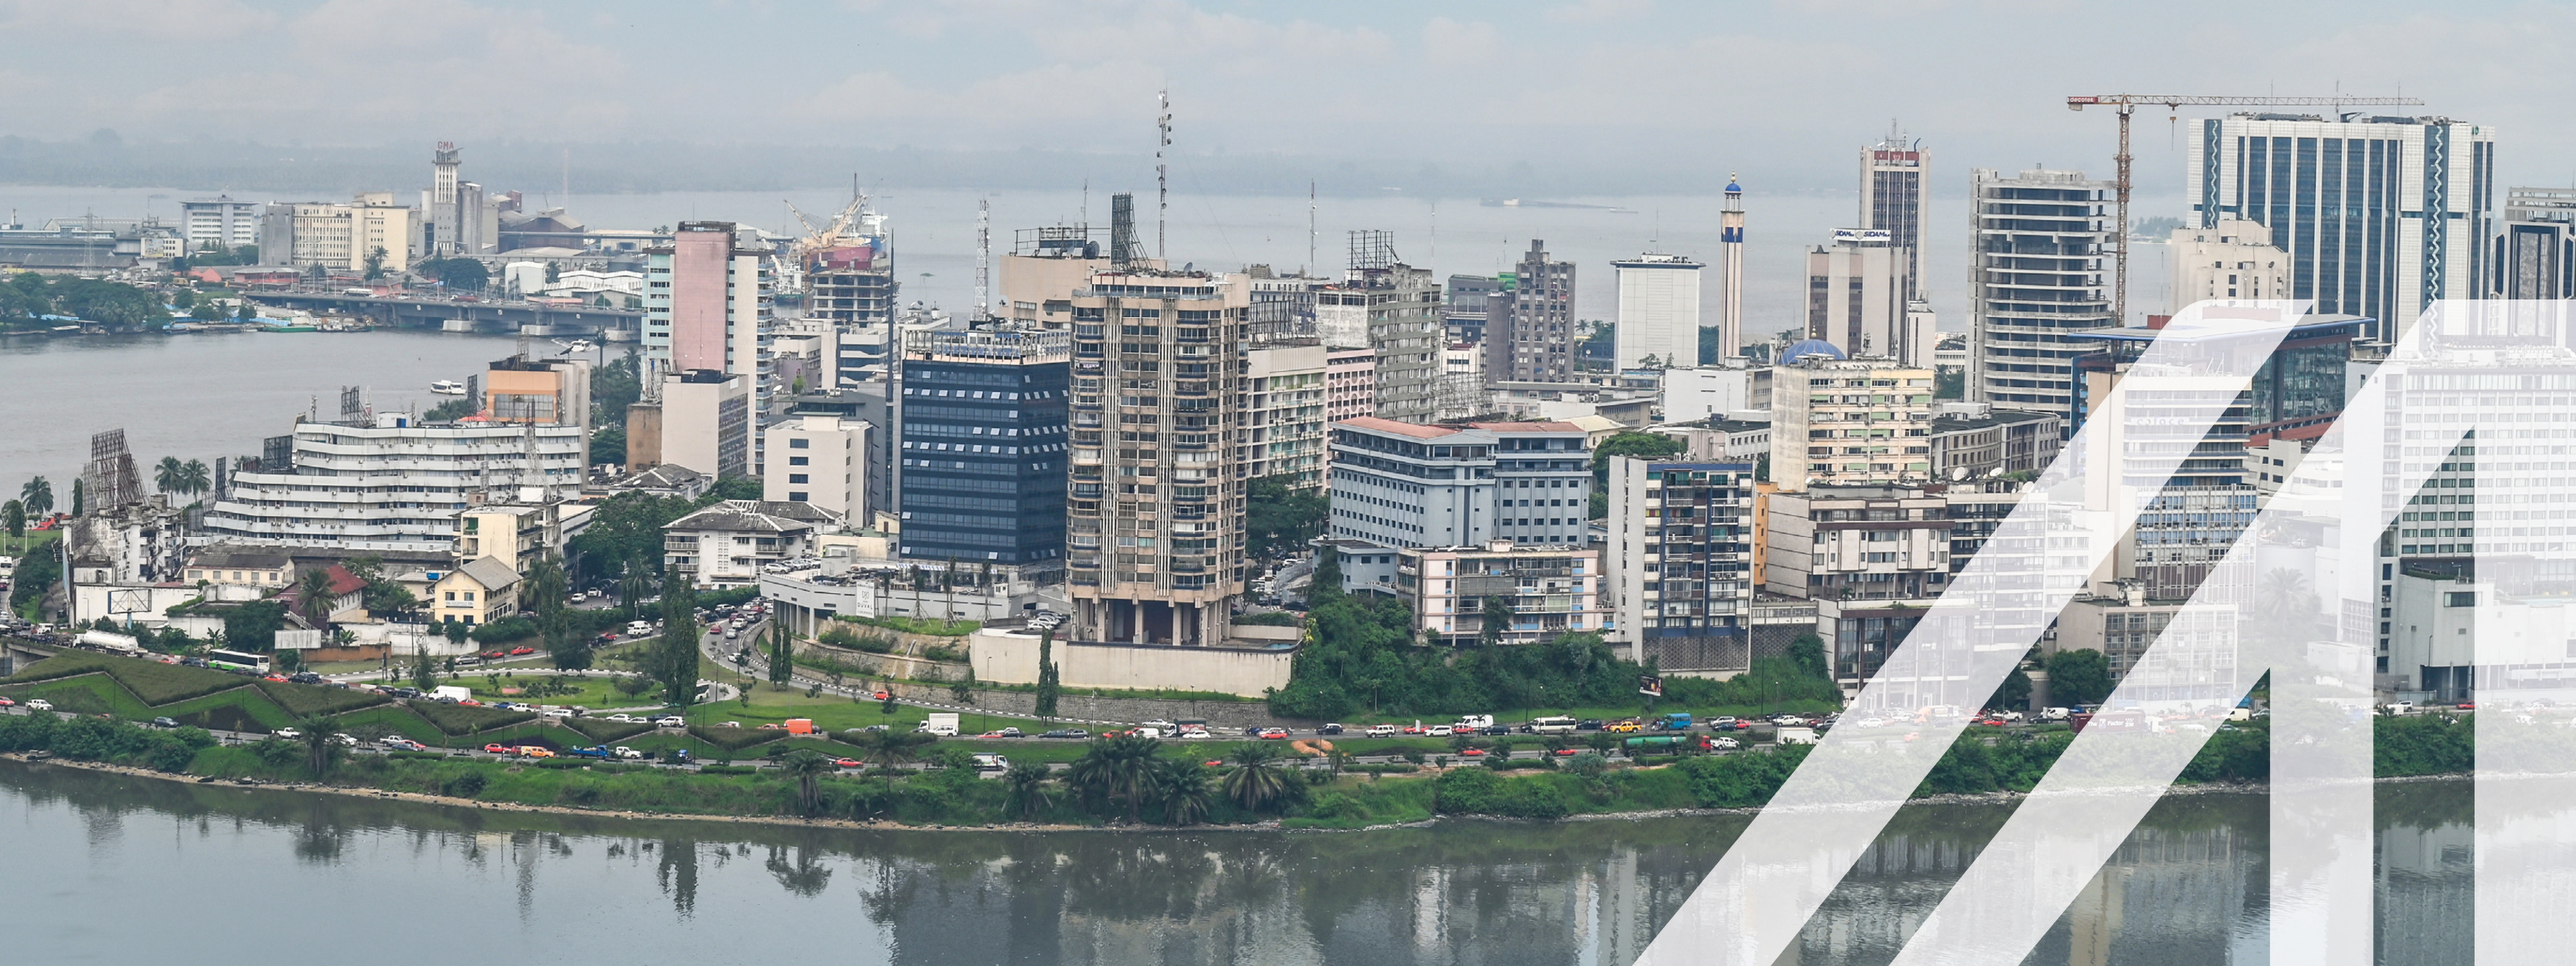 Stadtansicht von Abidjan unter blauem Himmel mit modernen Hochhäusern an einem begrünten Ufer